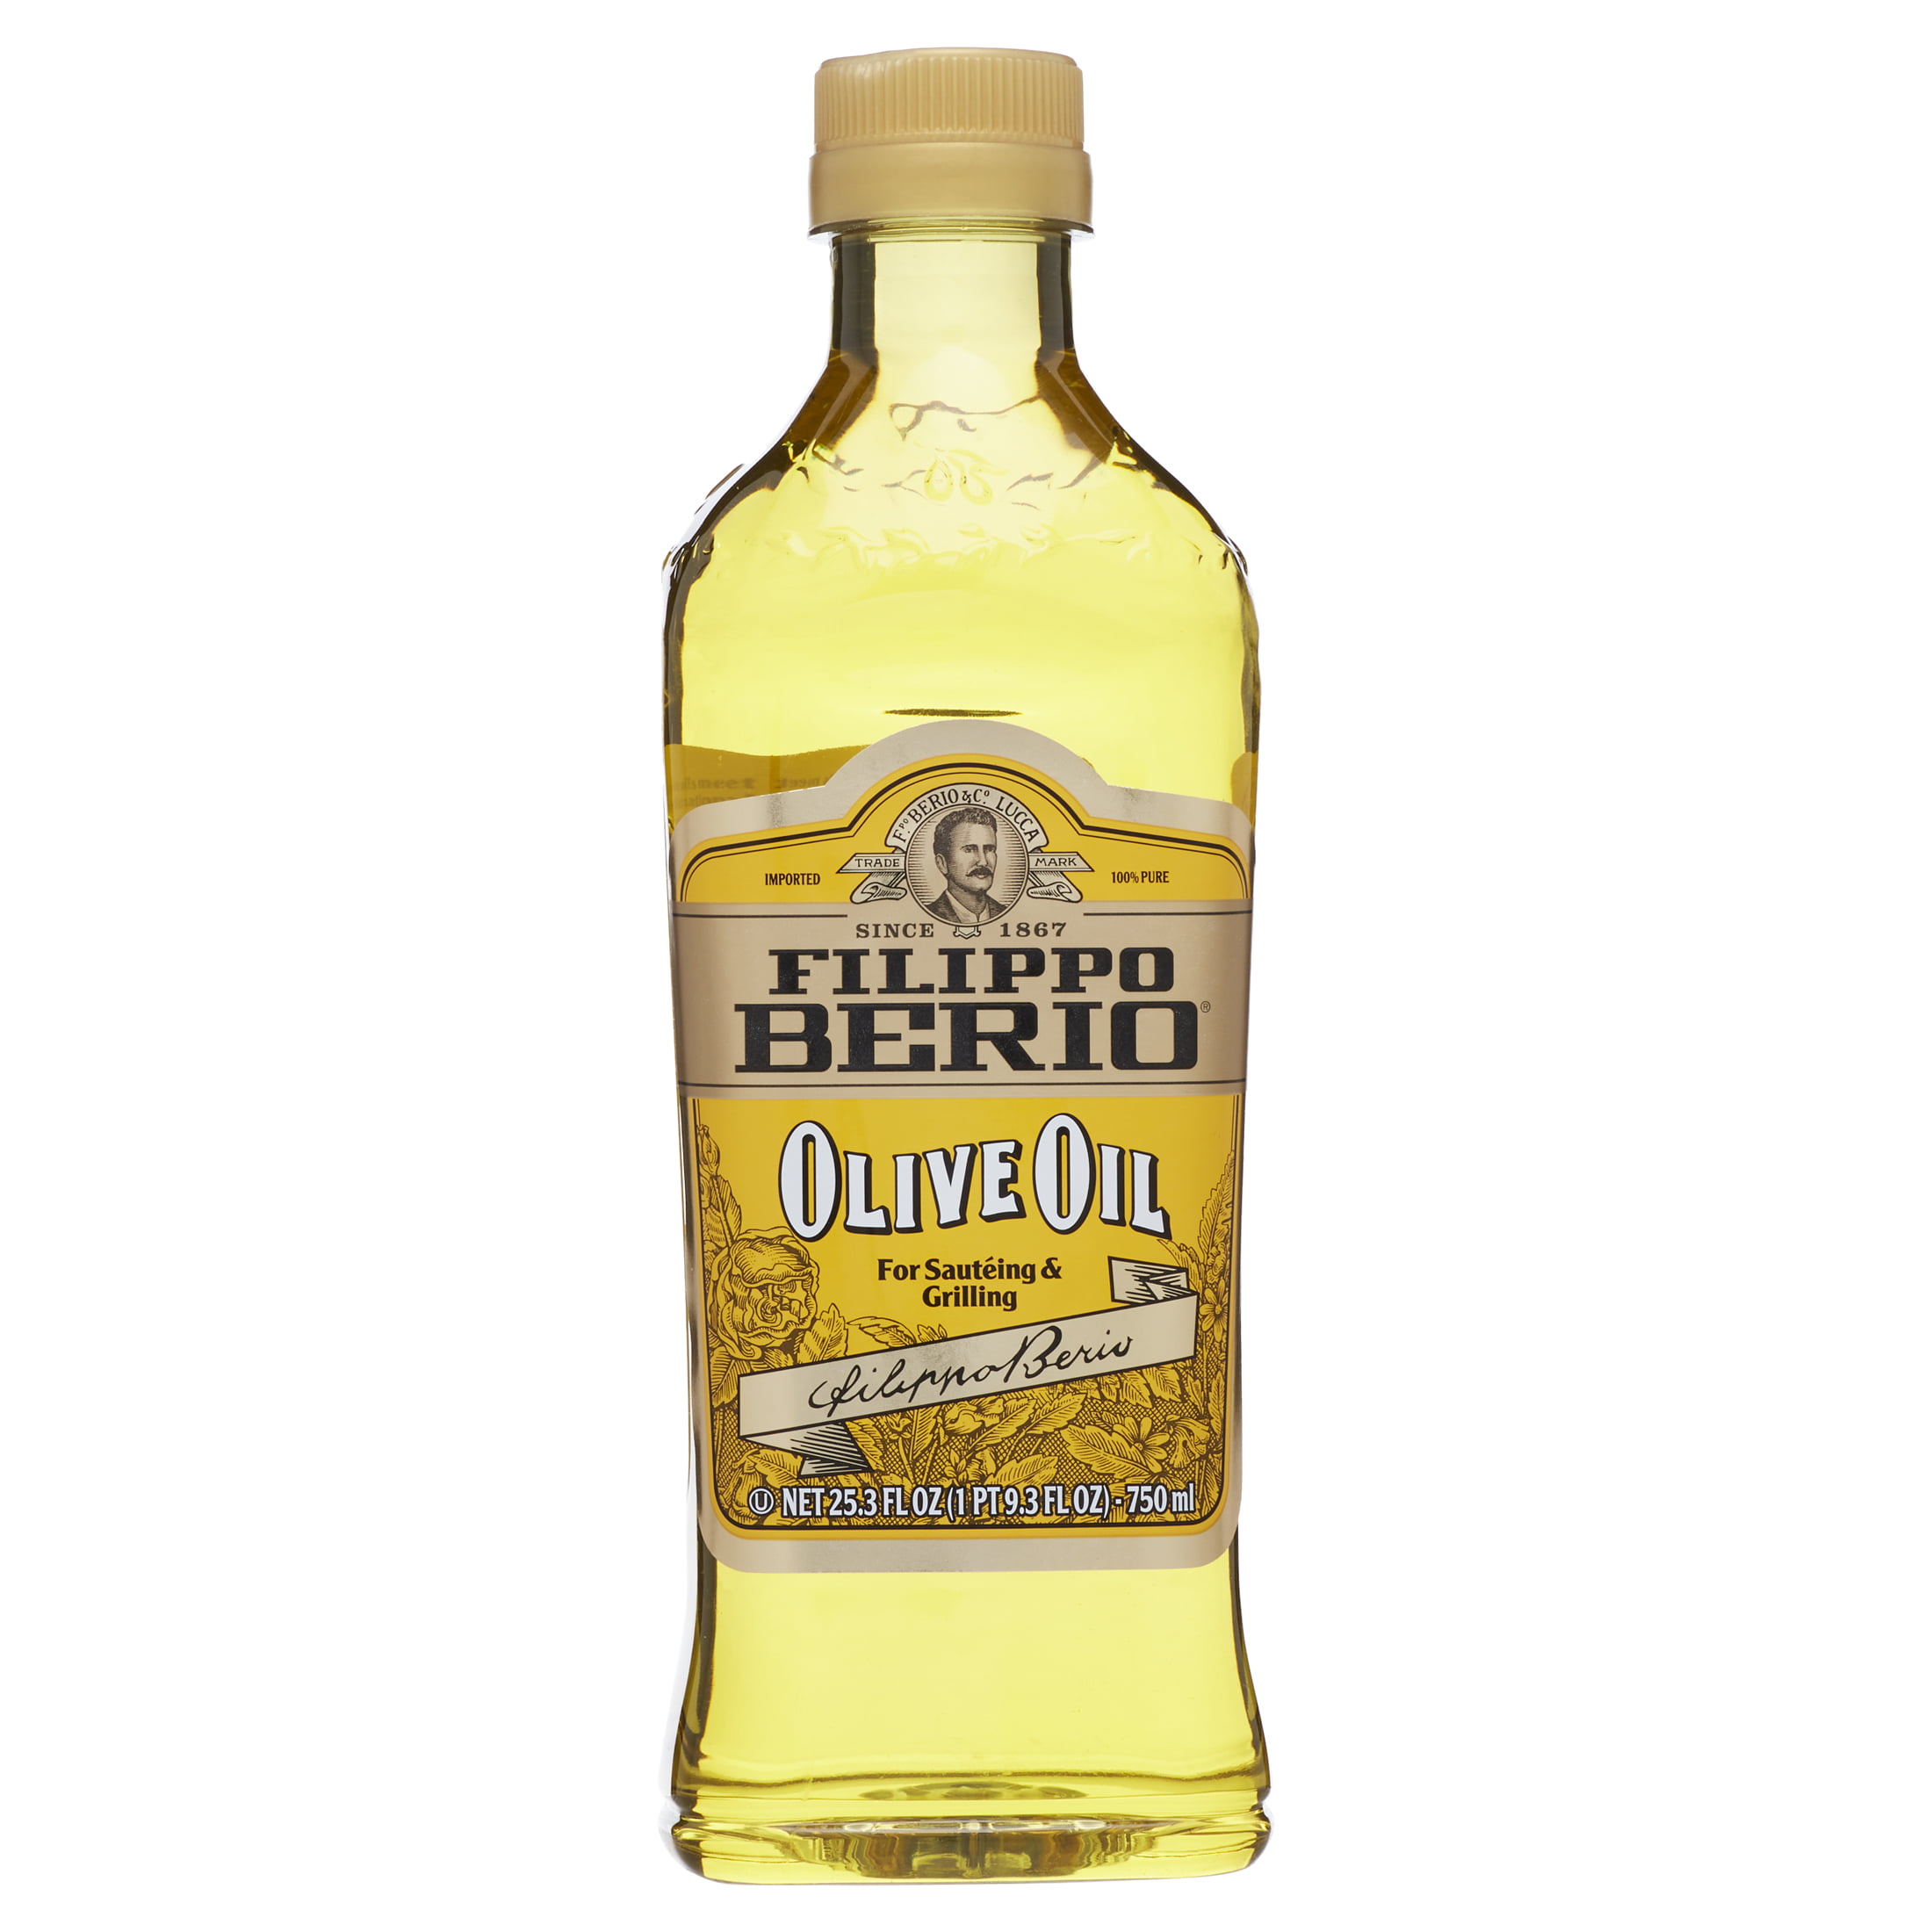 Filippo Berio Olive Oil, 25.3 fl oz